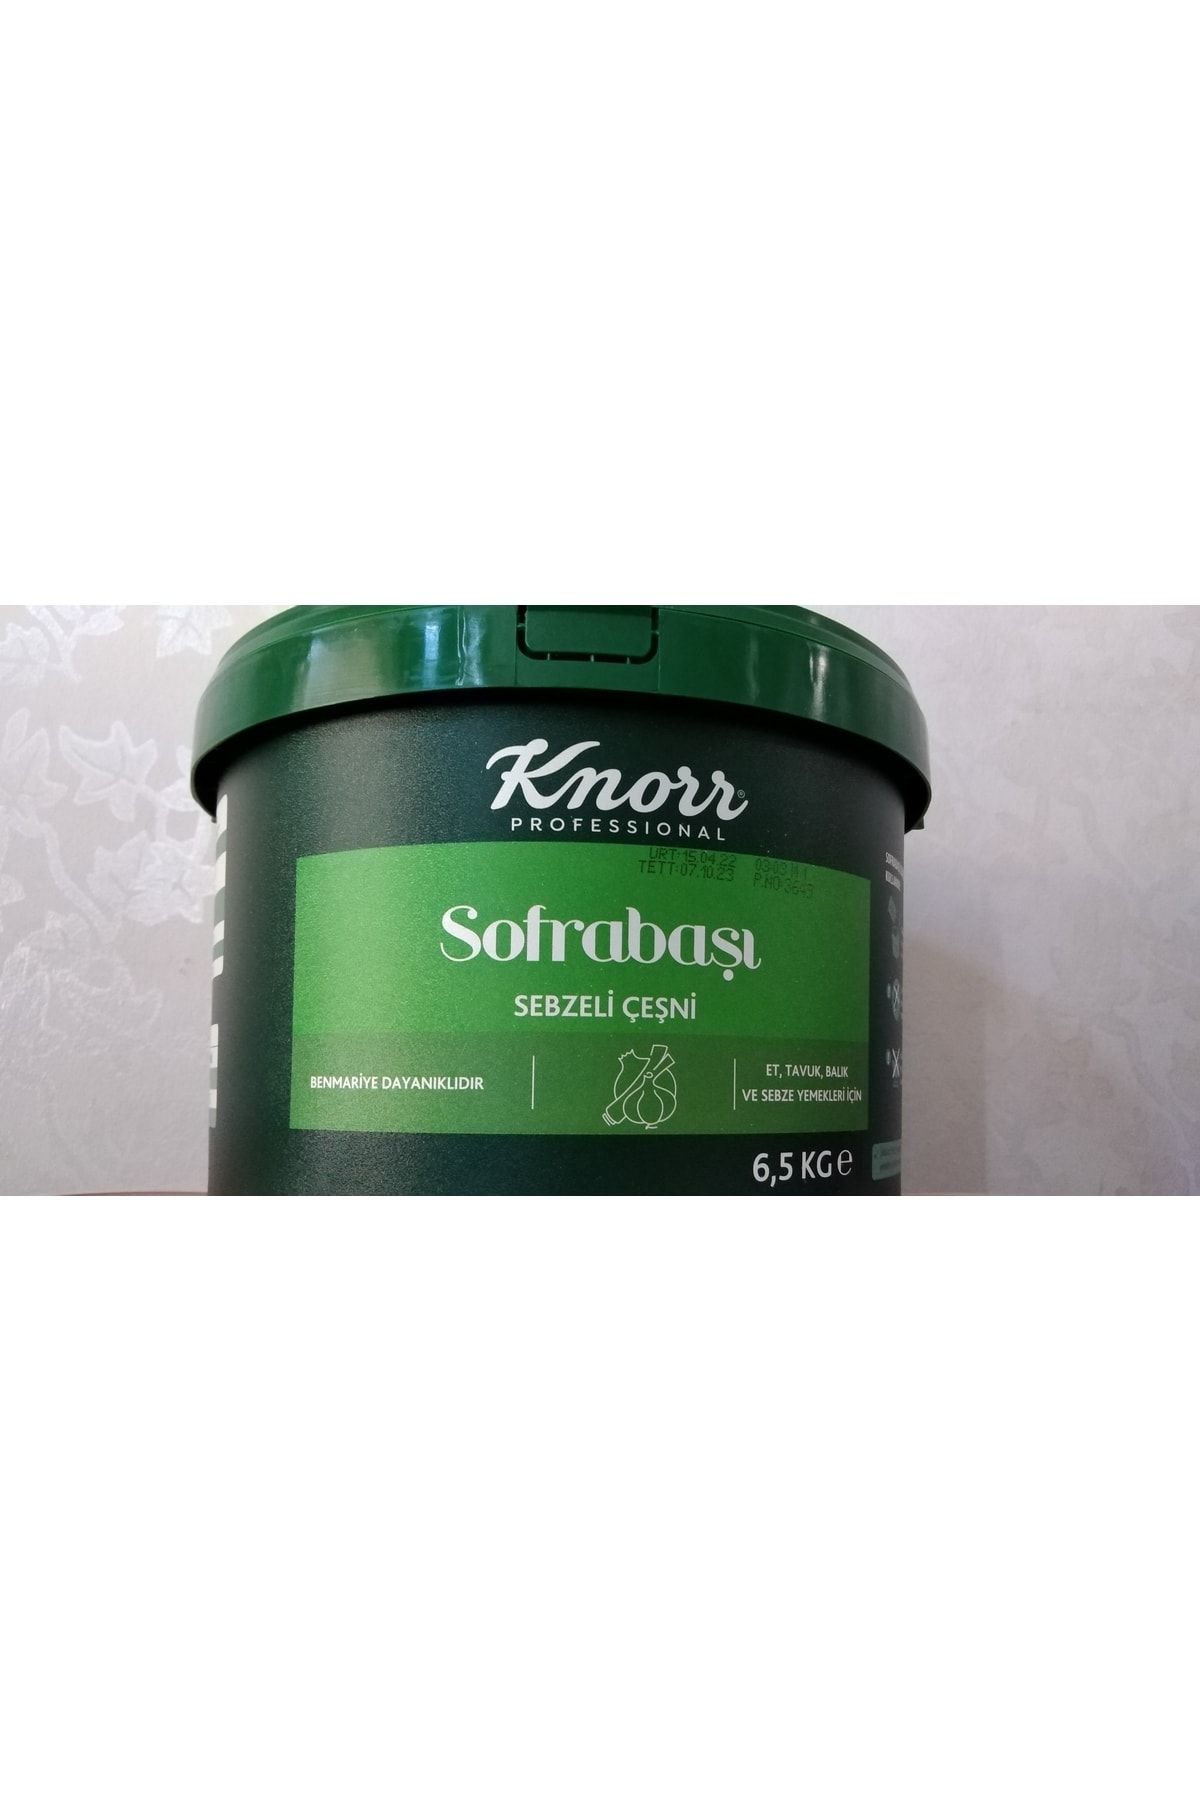 Knorr Sofrabaşı Sebzeli Çeşni 6,5 Kg